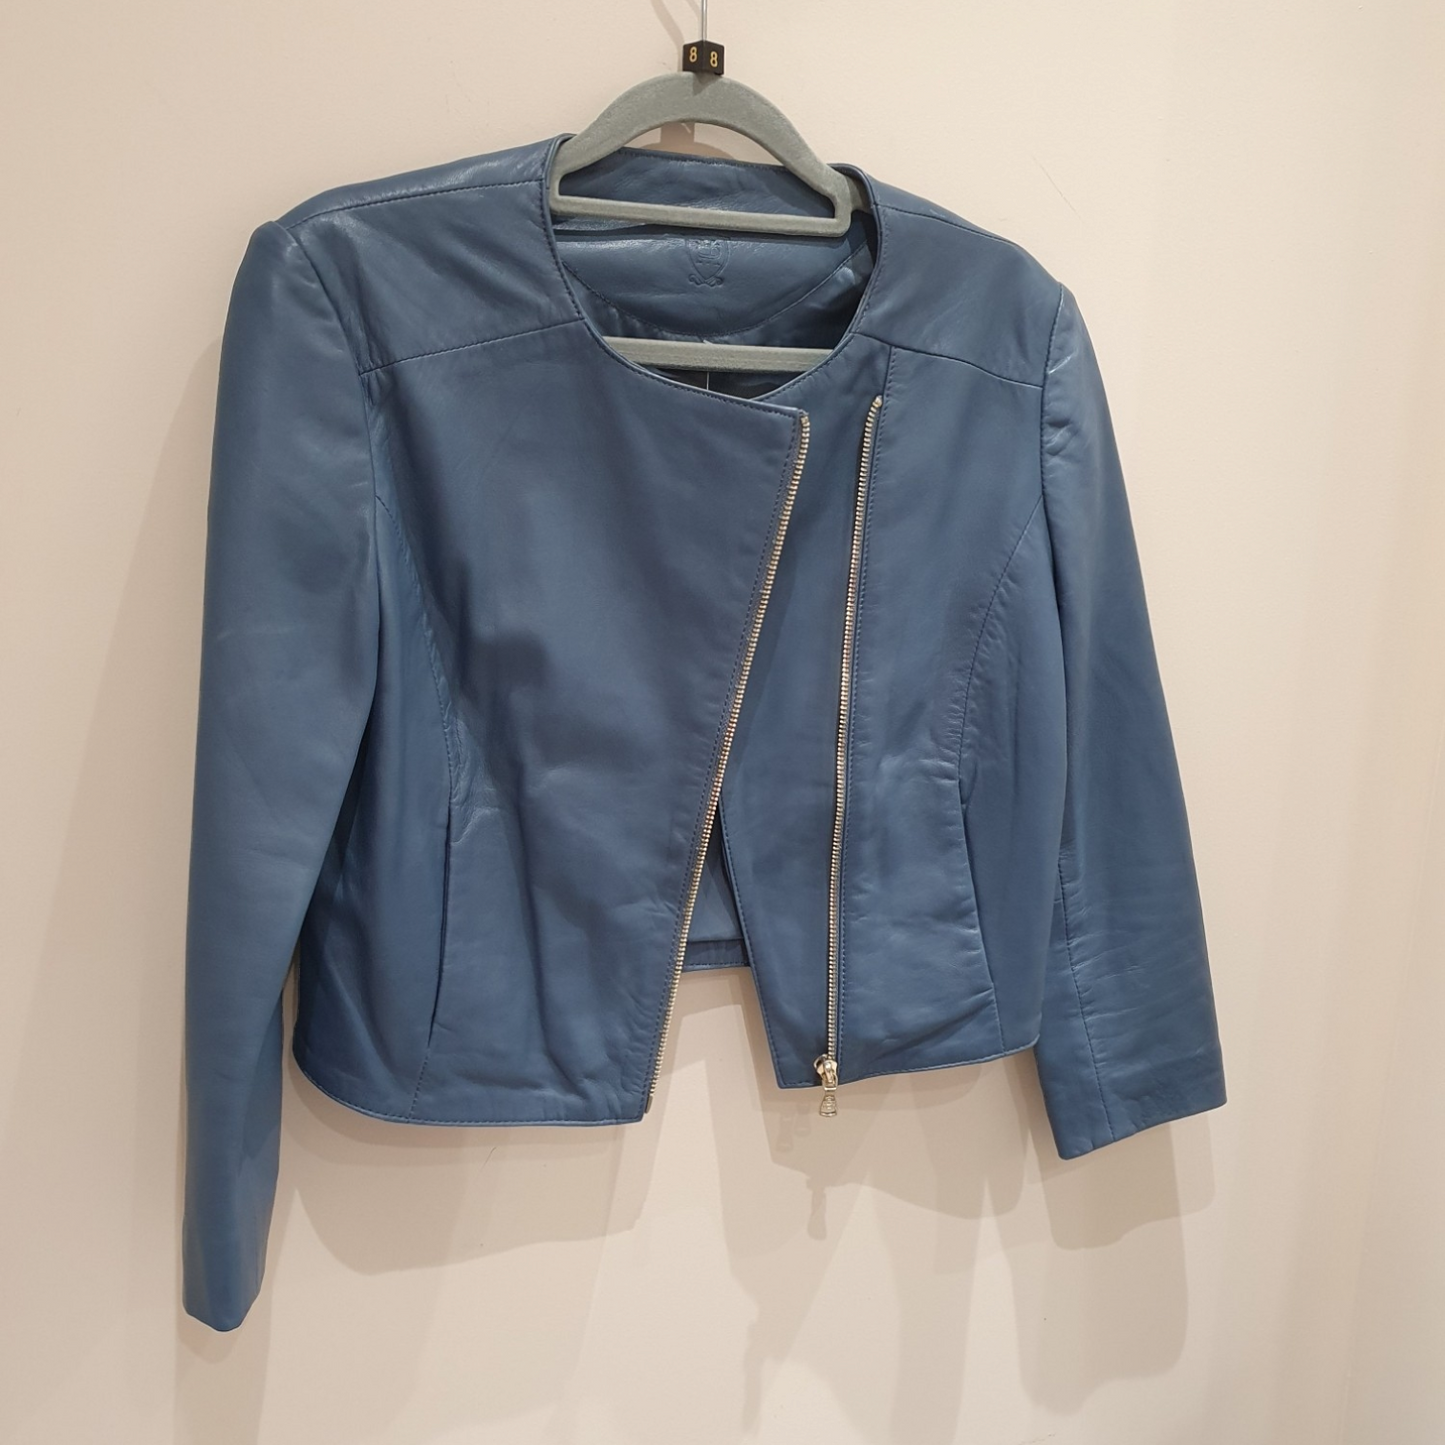 Massimo Dutti blue leather jacket,  Size xs